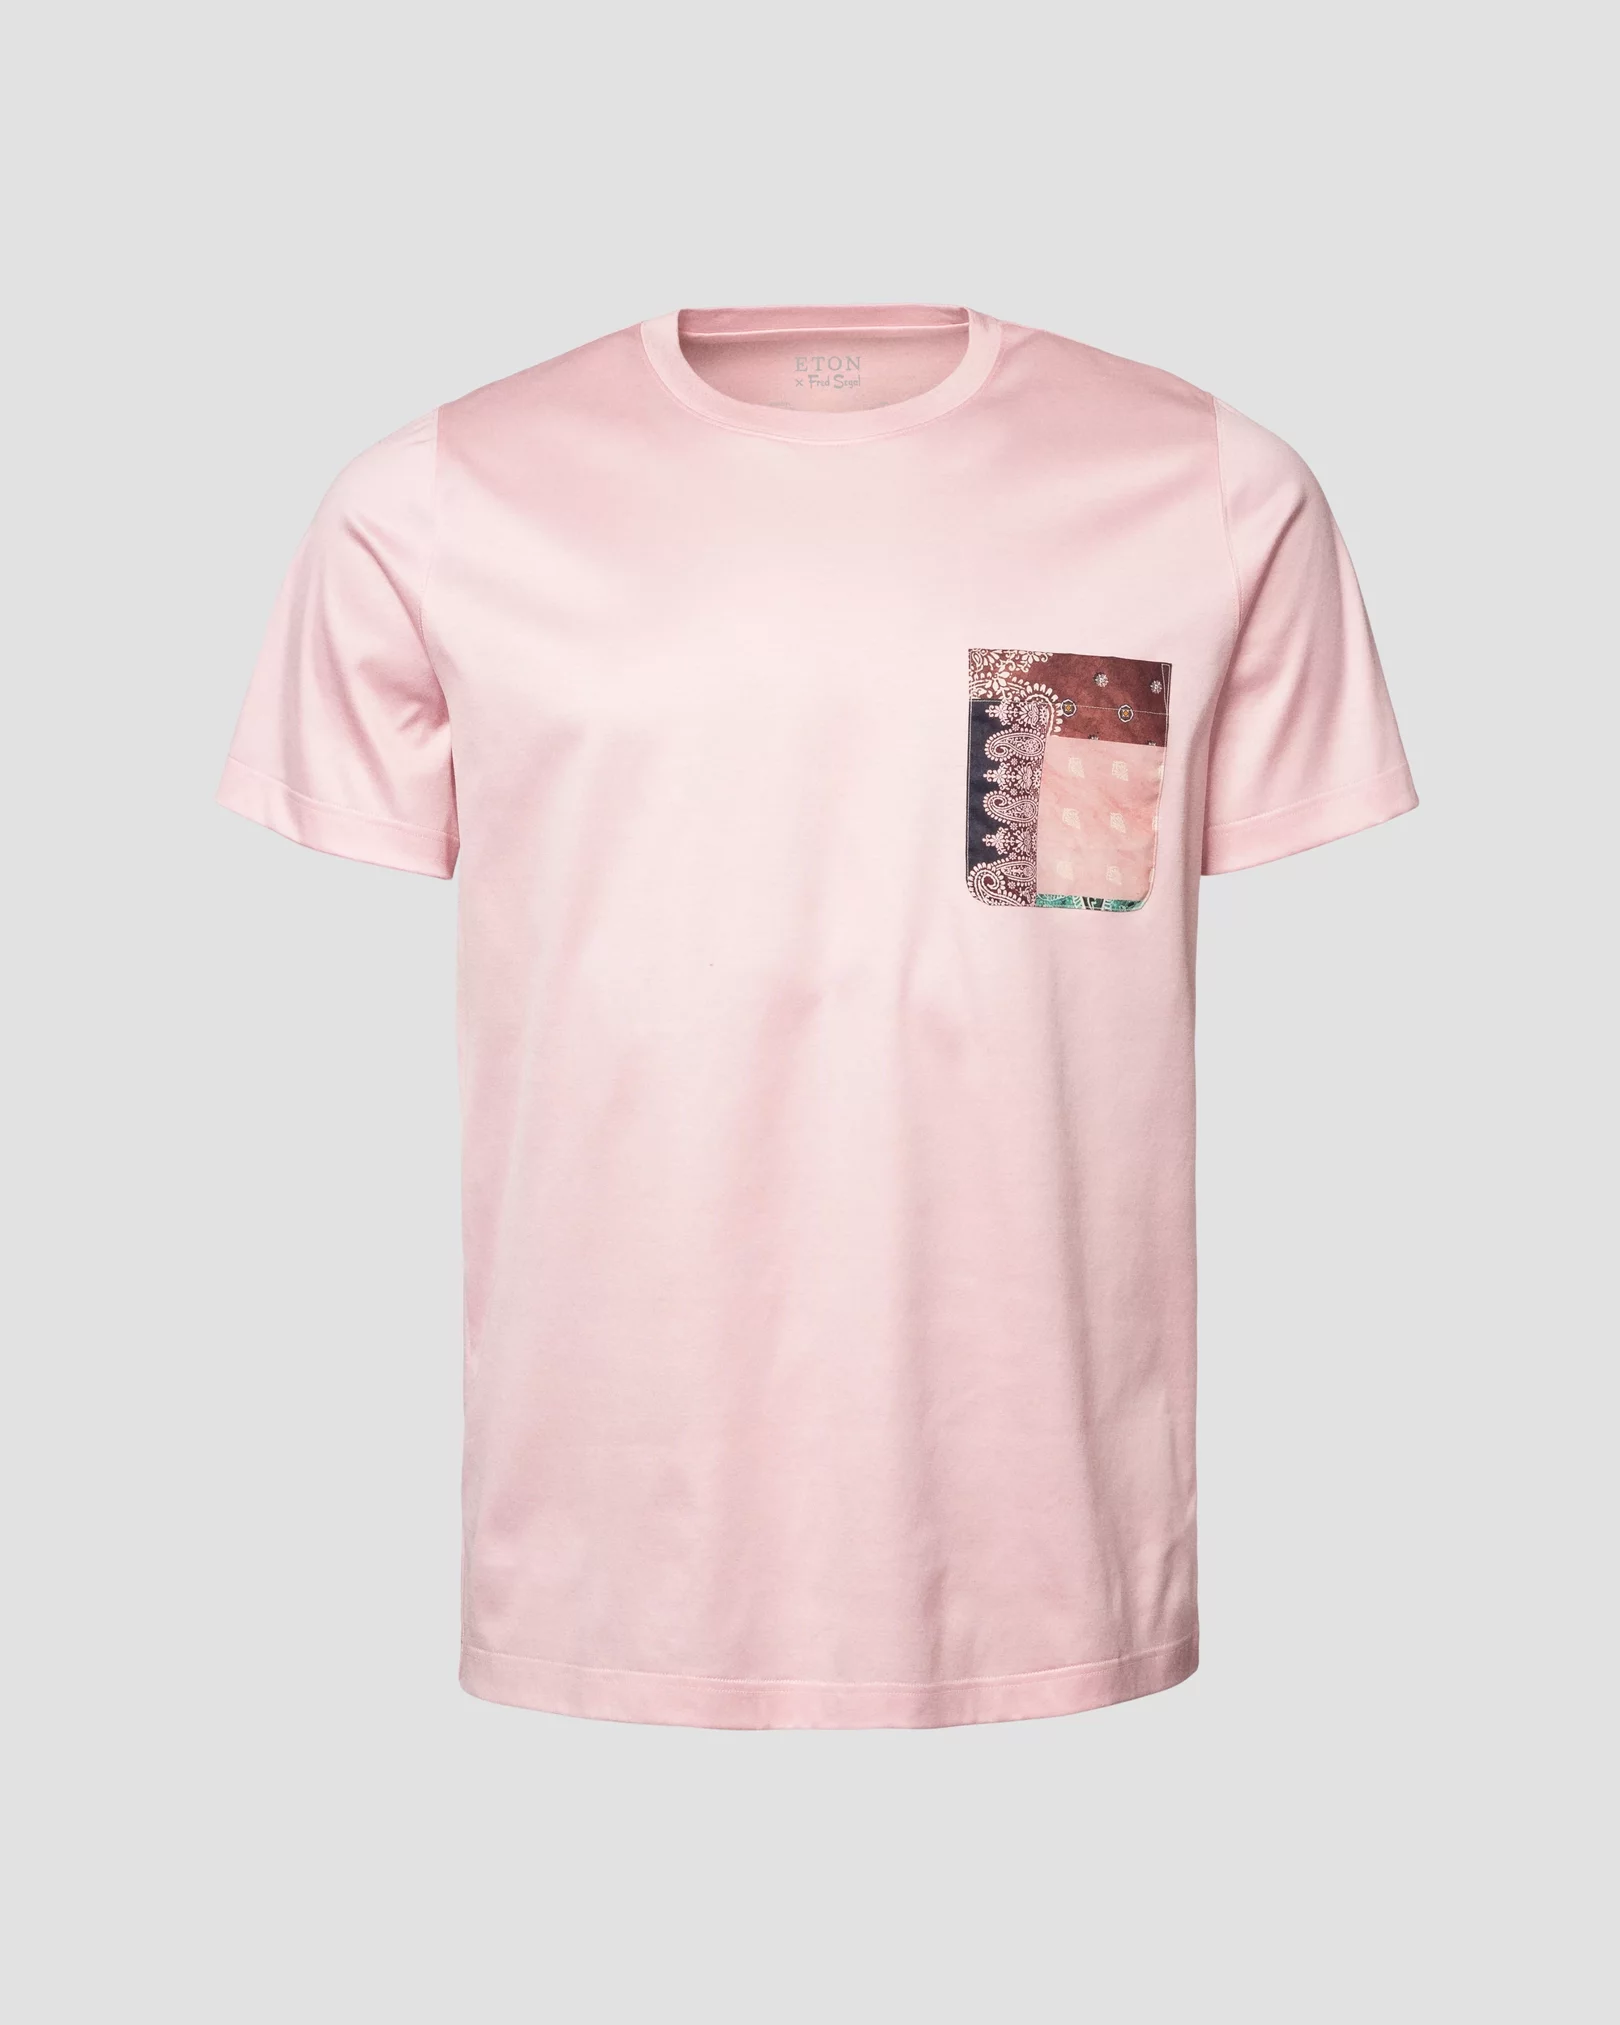 Rosa T-Shirt aus Filo di Scozia in einer Special Edition